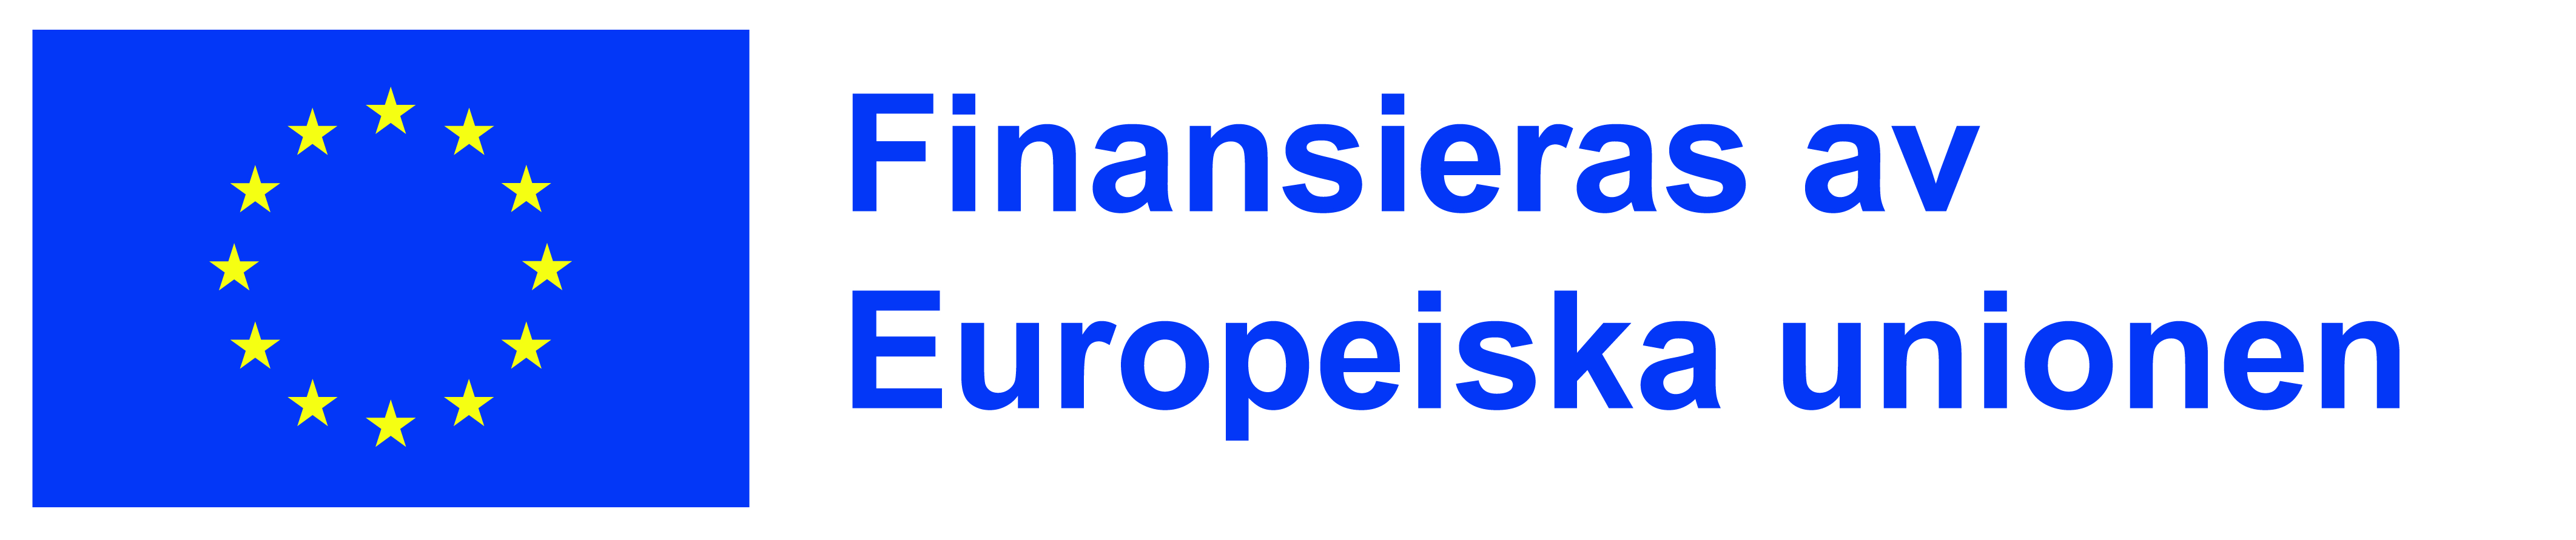 EU-logga Finansierat av Europeiska unionen